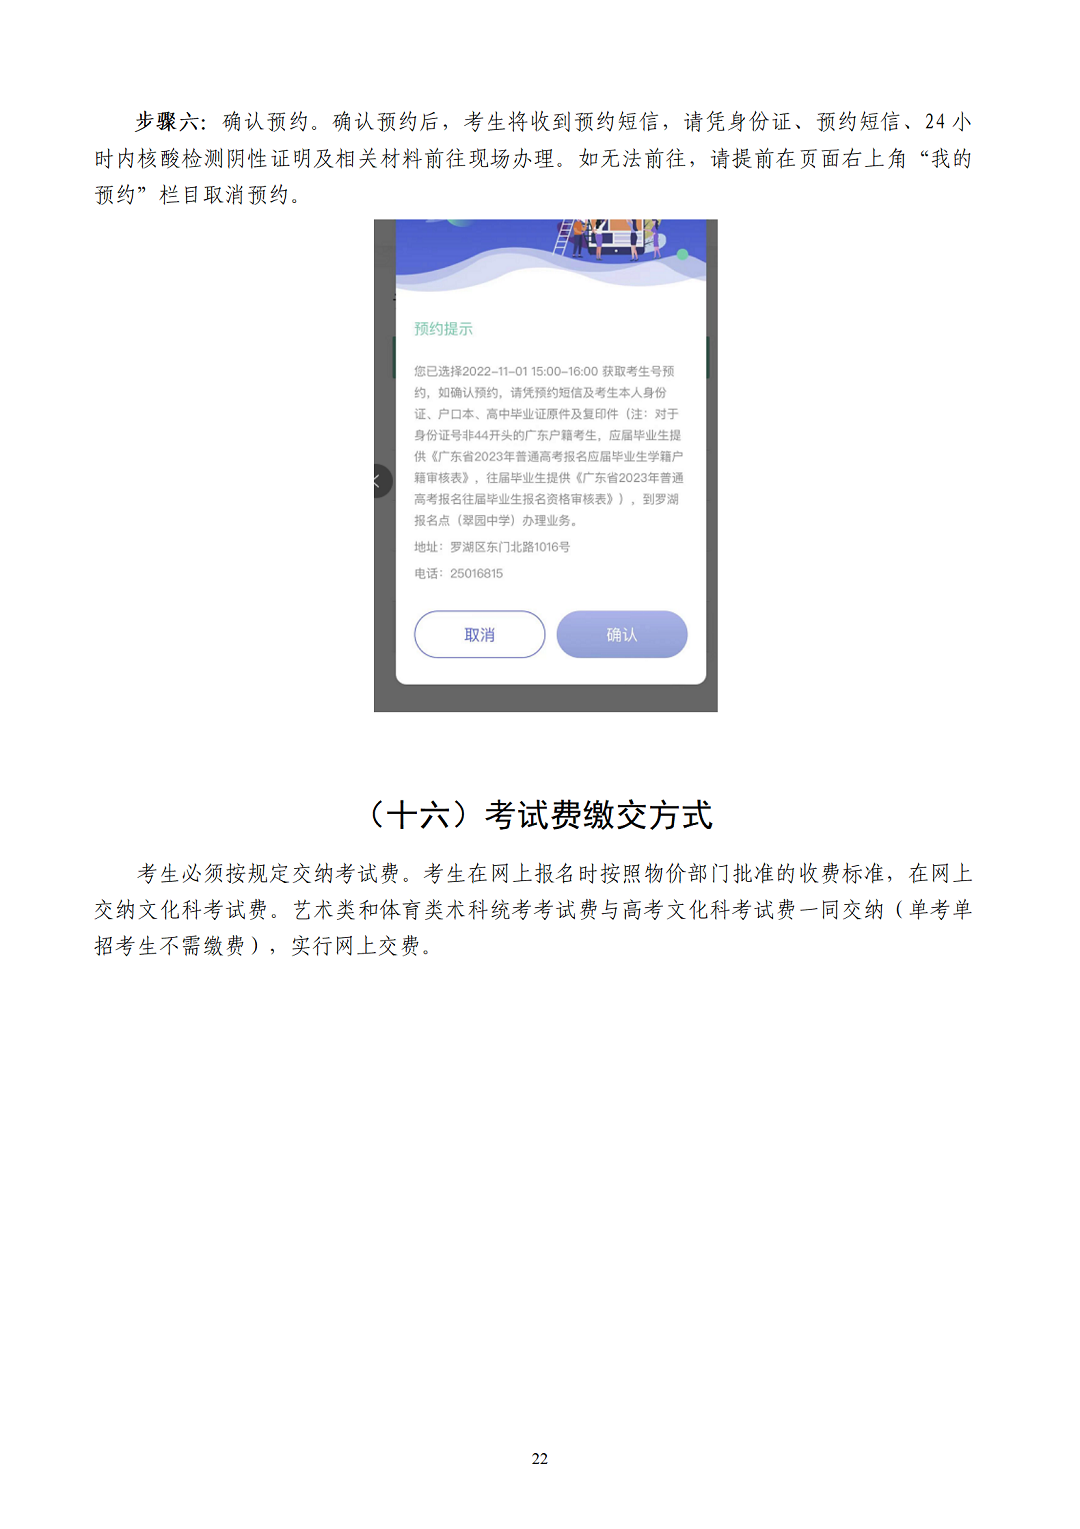 （有封面）2023年深圳高考报名手册v4.0-1024-A4版本-最终_24.png